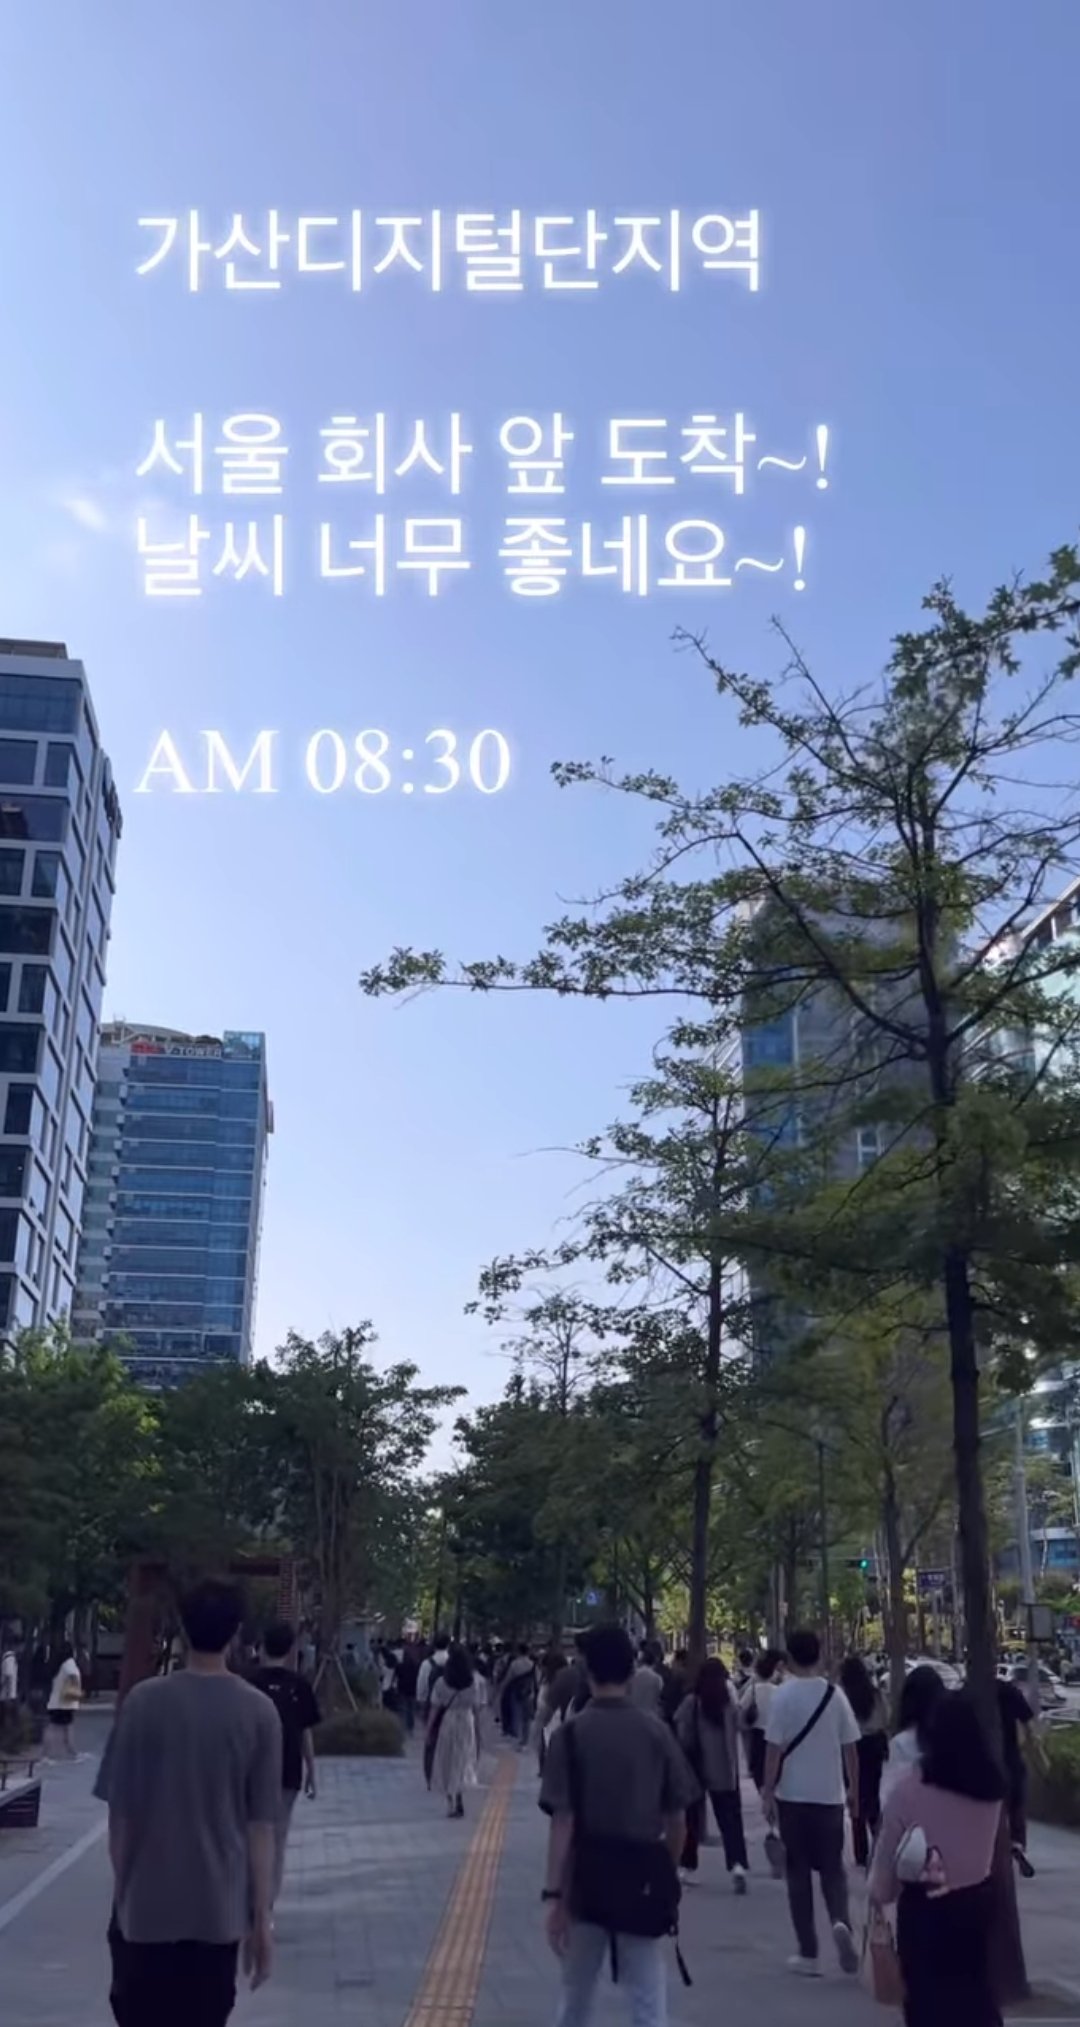 천안아산 - 서울 출퇴근 도어투도어로 1시간만에 하는법.jpg